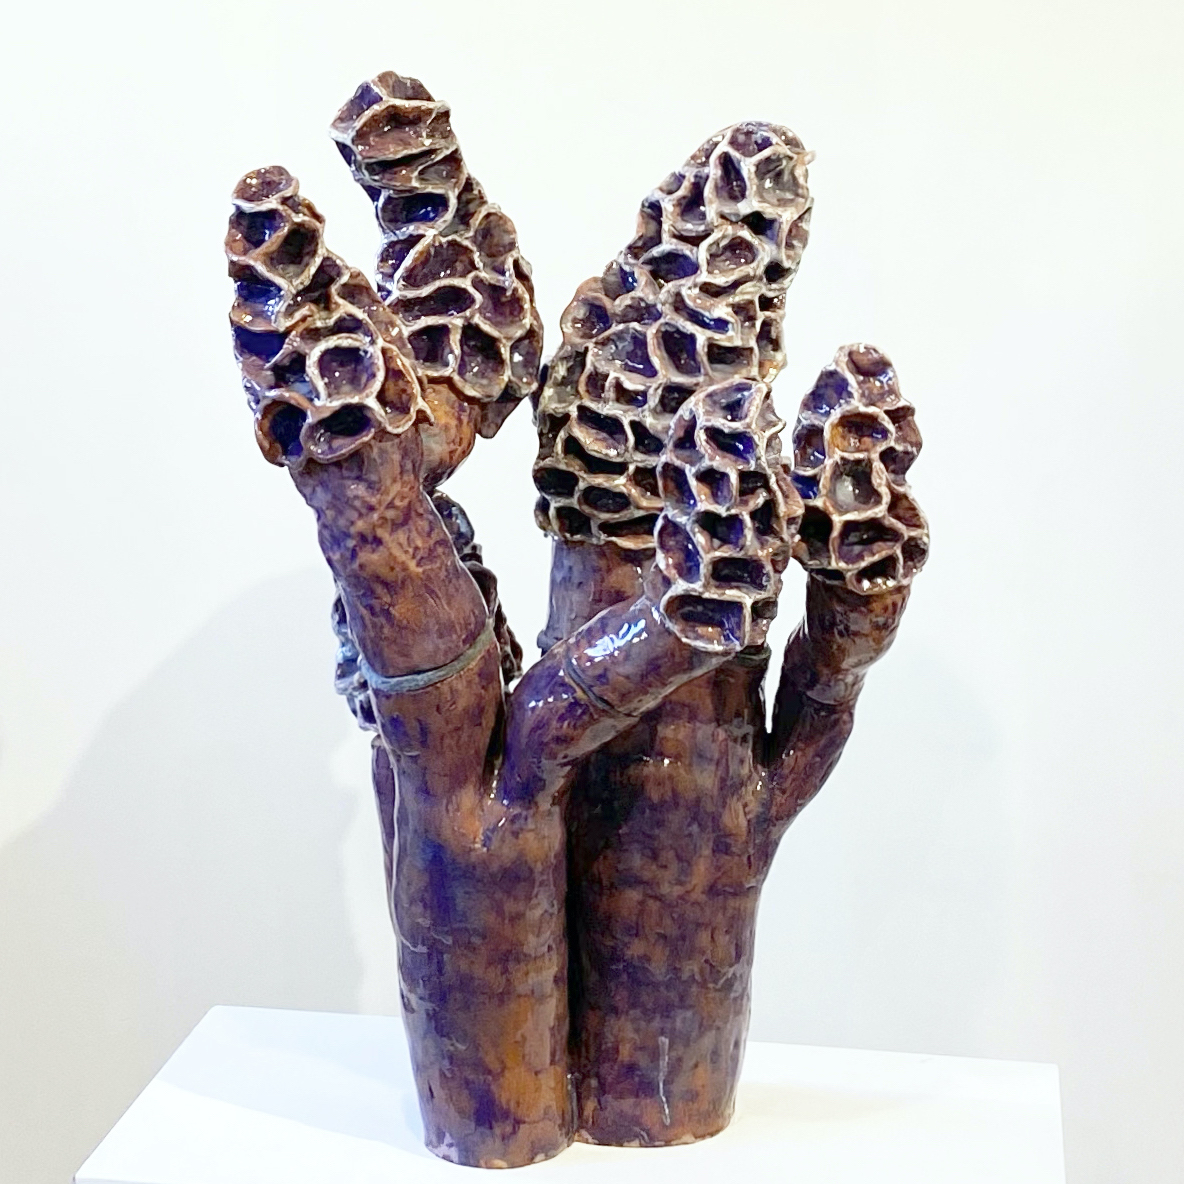 CFile, Author at CFile - Contemporary Ceramic Art + Design